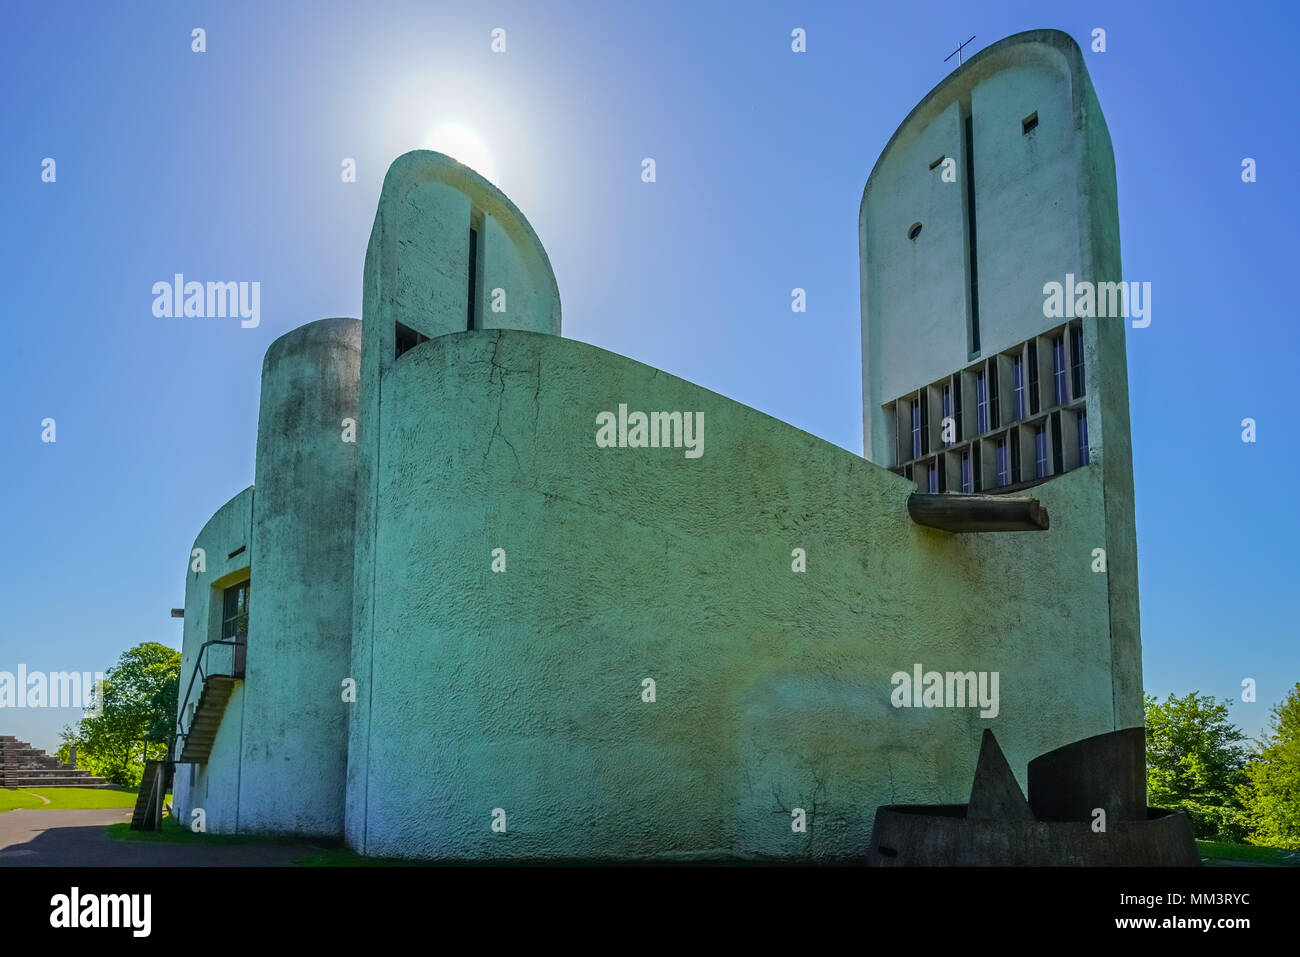 Vista de la emblemática Capilla de Ronchamp diseñada por el arquitecto suizo-francés Le Corbusier, Francia. Foto de stock